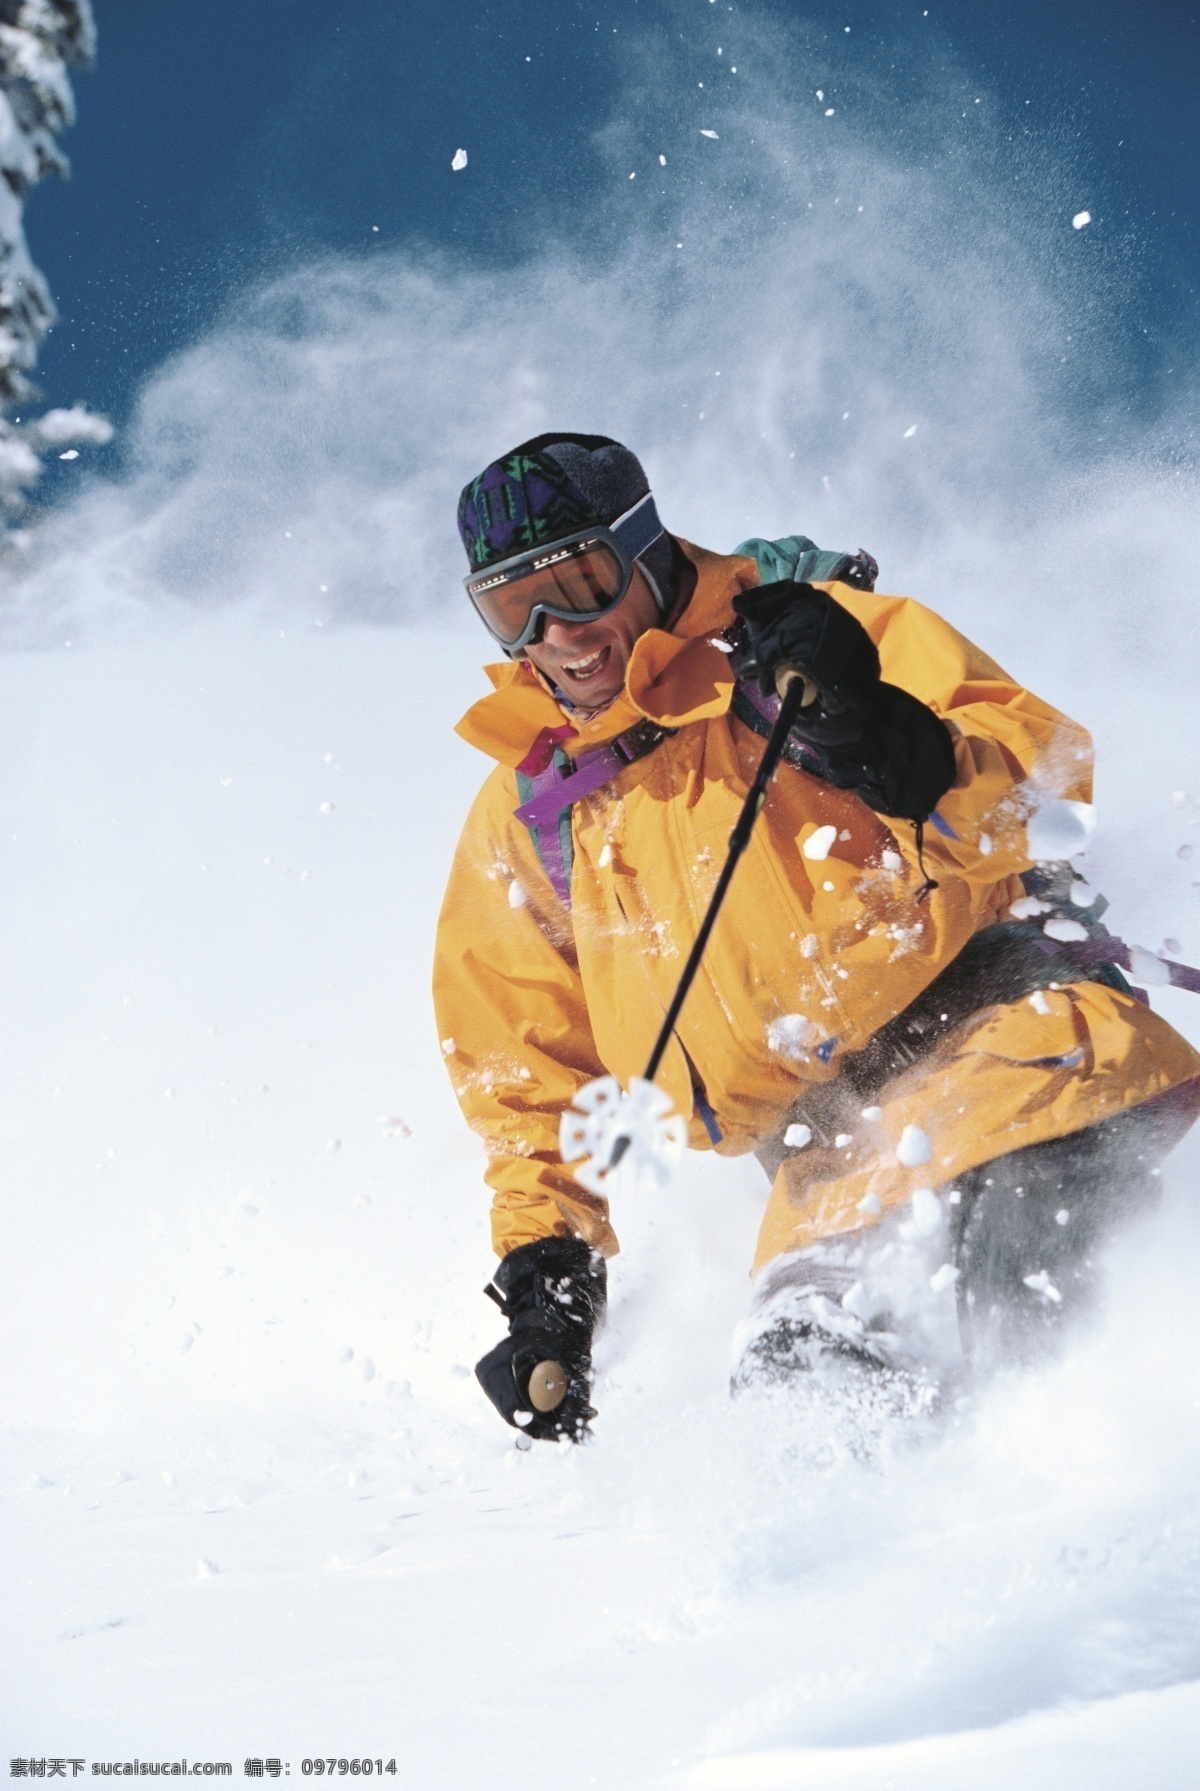 高山 滑雪 运动 运动员 高清 冬天 雪地运动 划雪运动 极限运动 体育项目 下滑 速度 运动图片 生活百科 雪山 美丽 雪景 风景 摄影图片 高清图片 体育运动 白色